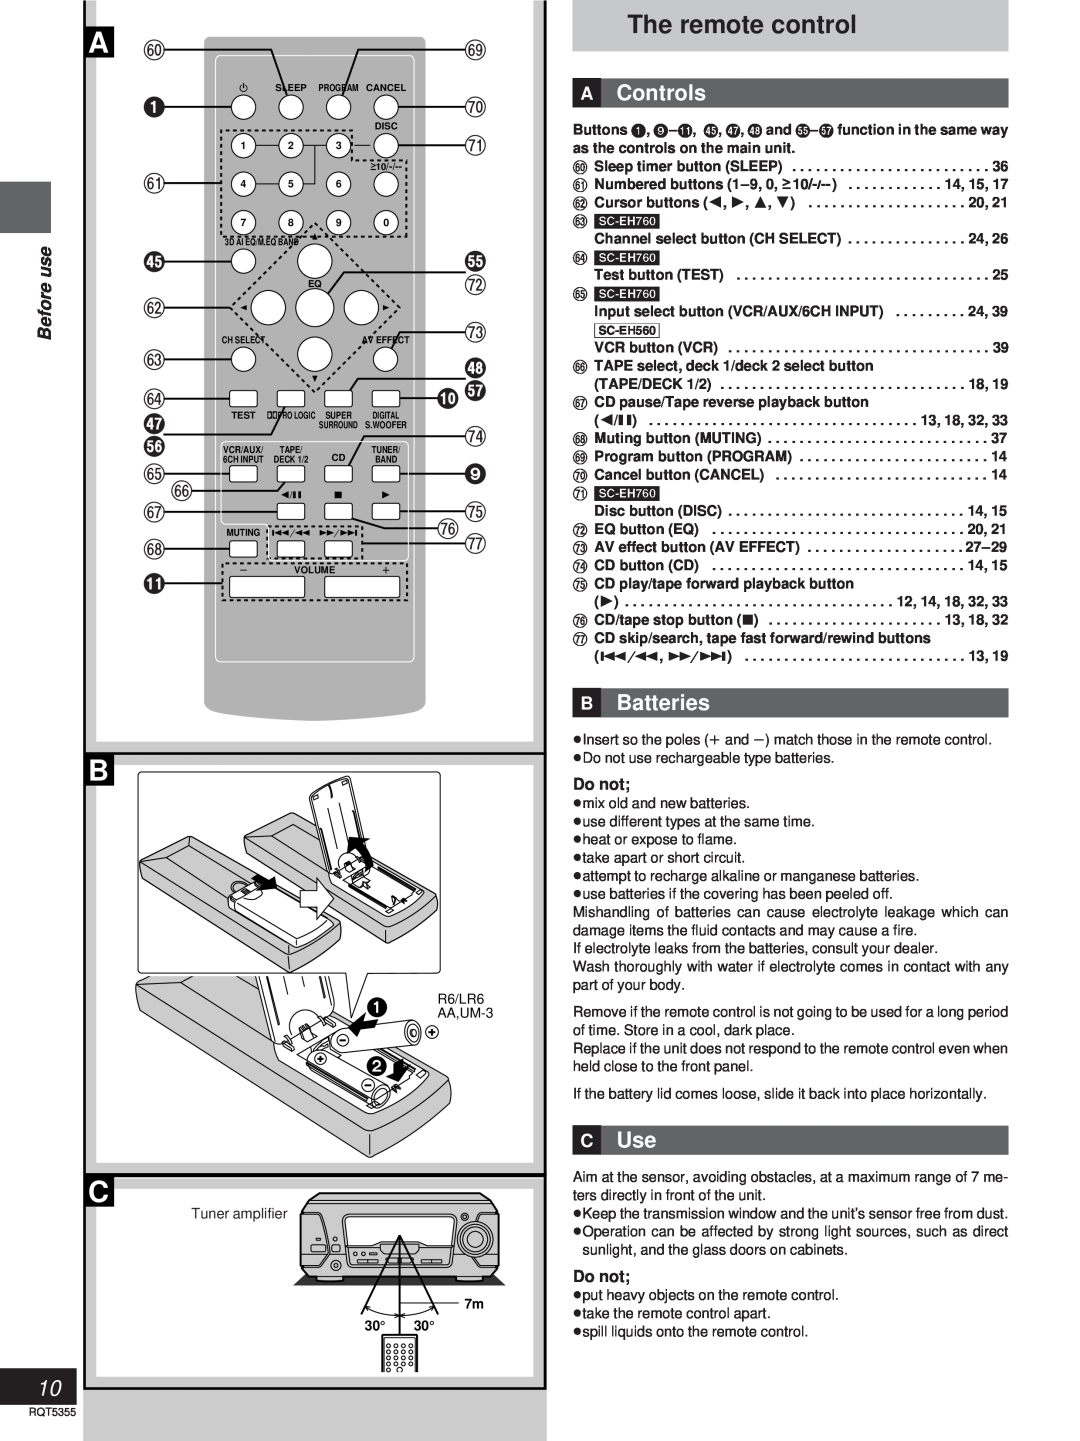 Technics SC-EH760, SC-EH560 manual The remote control, »A Controls, ` i z, »B Batteries, »C Use 